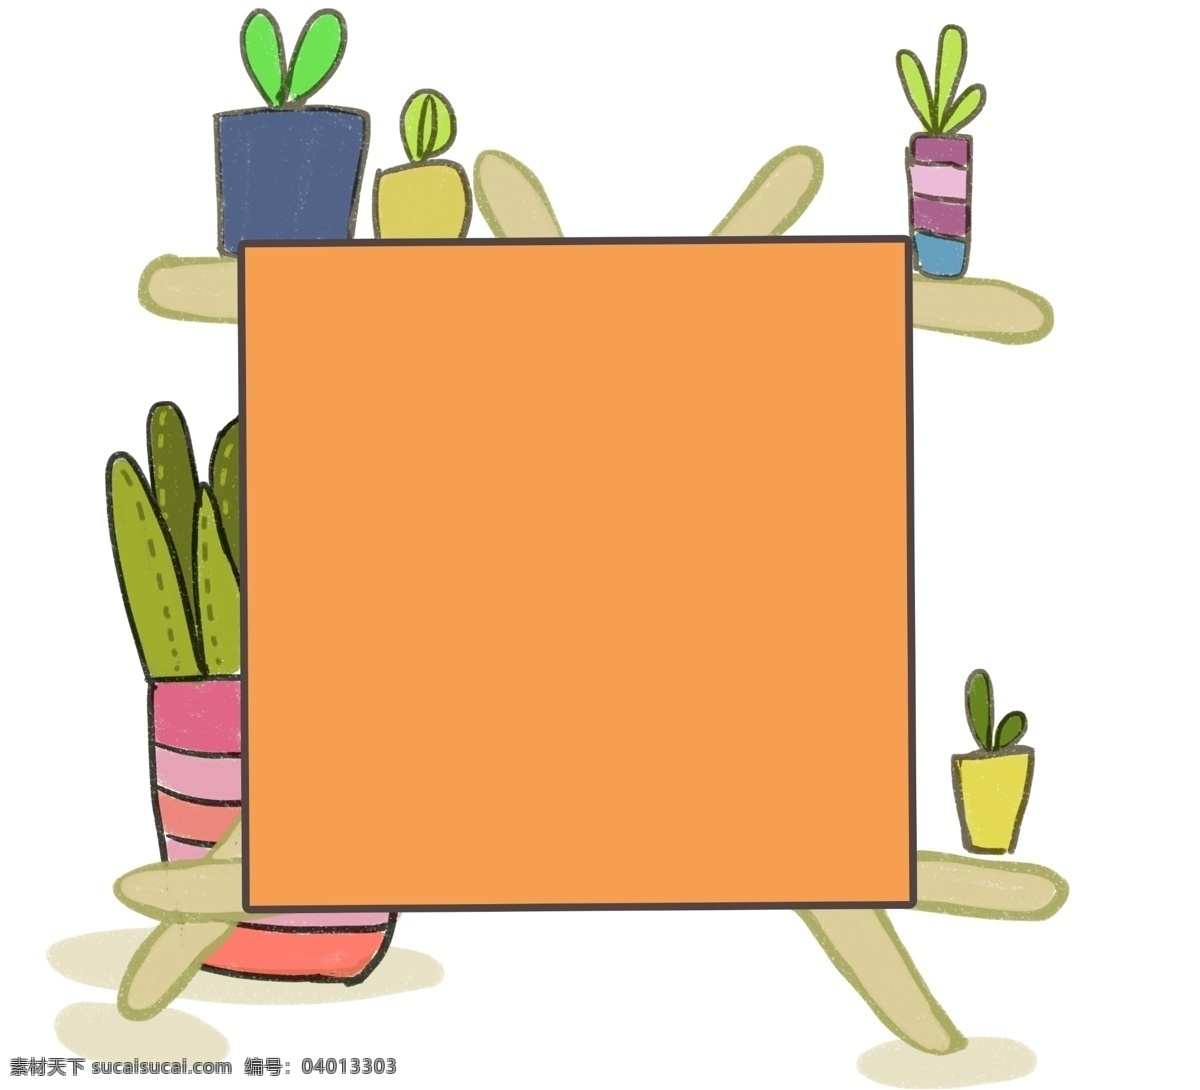 橘 色 画板 盆栽 边框 橘色画板 植物盆栽 装饰边框